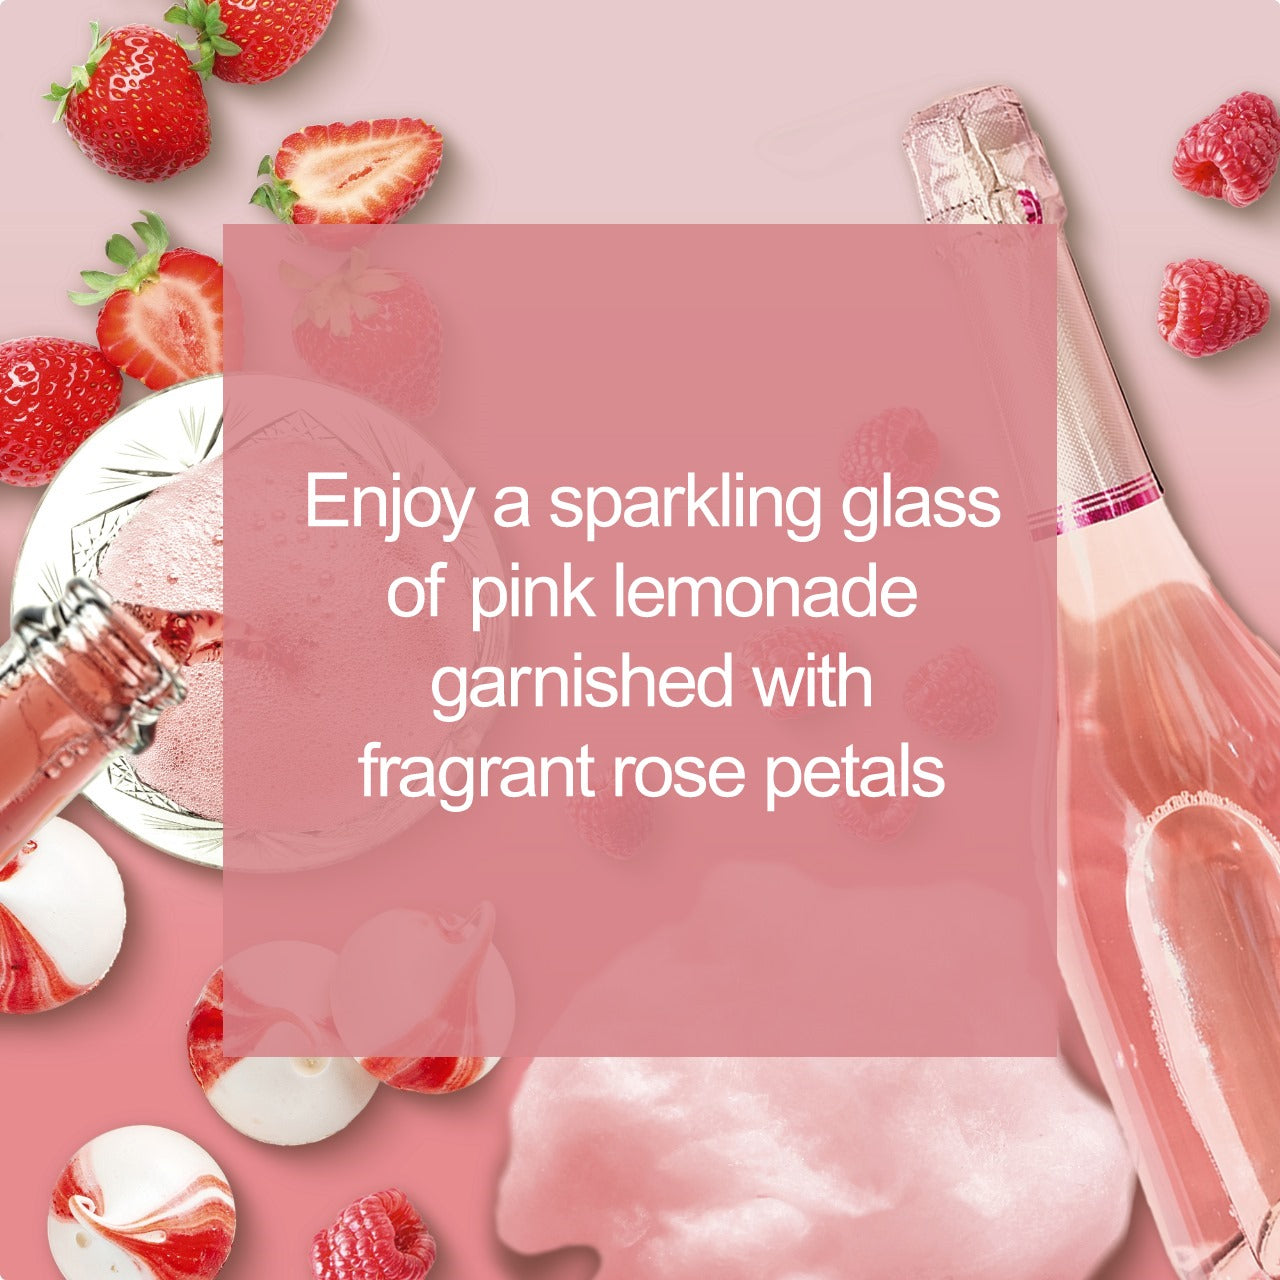 Rose Lemonade Enjoy a sparkling glass of pink lemonade garnished with fragrant rose petals. 